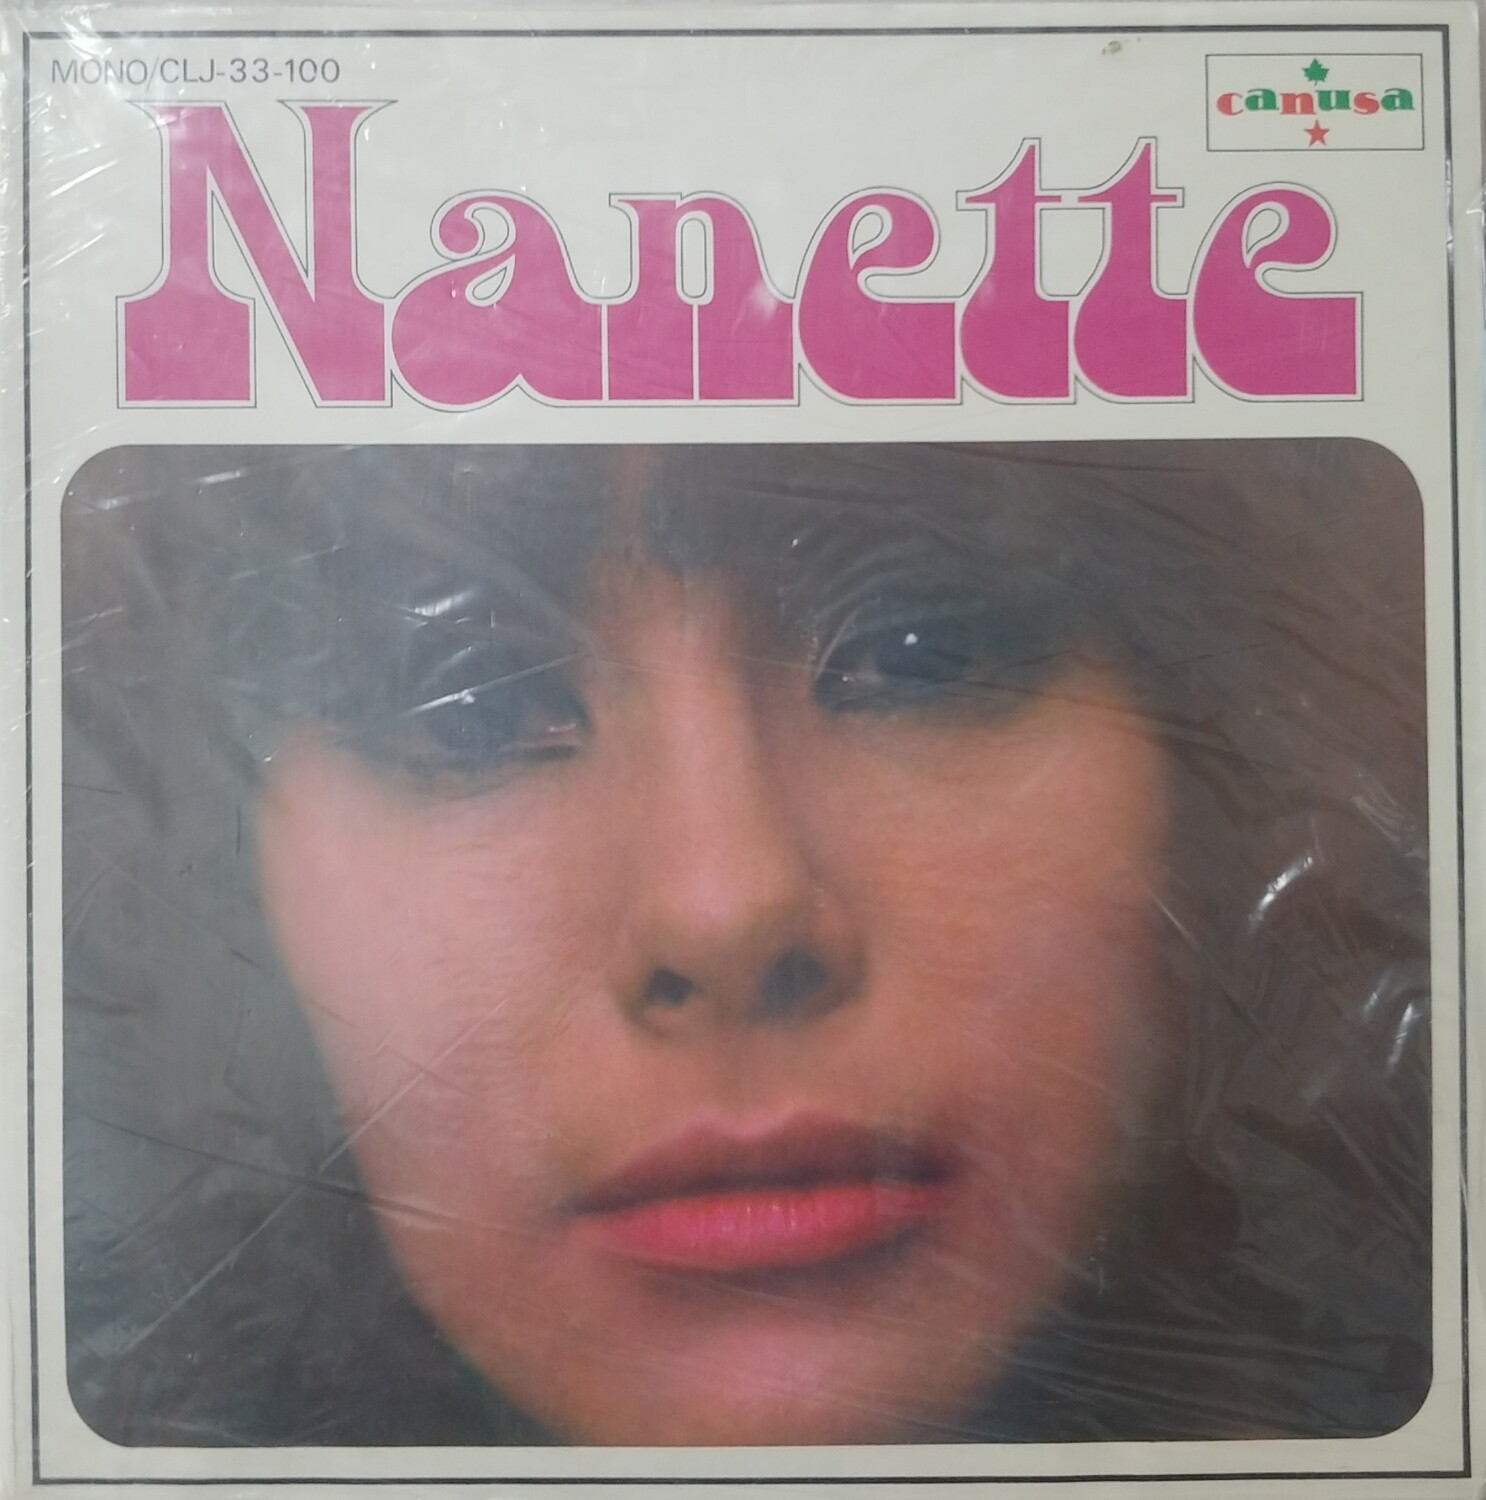 Nanette Workman - Nanette